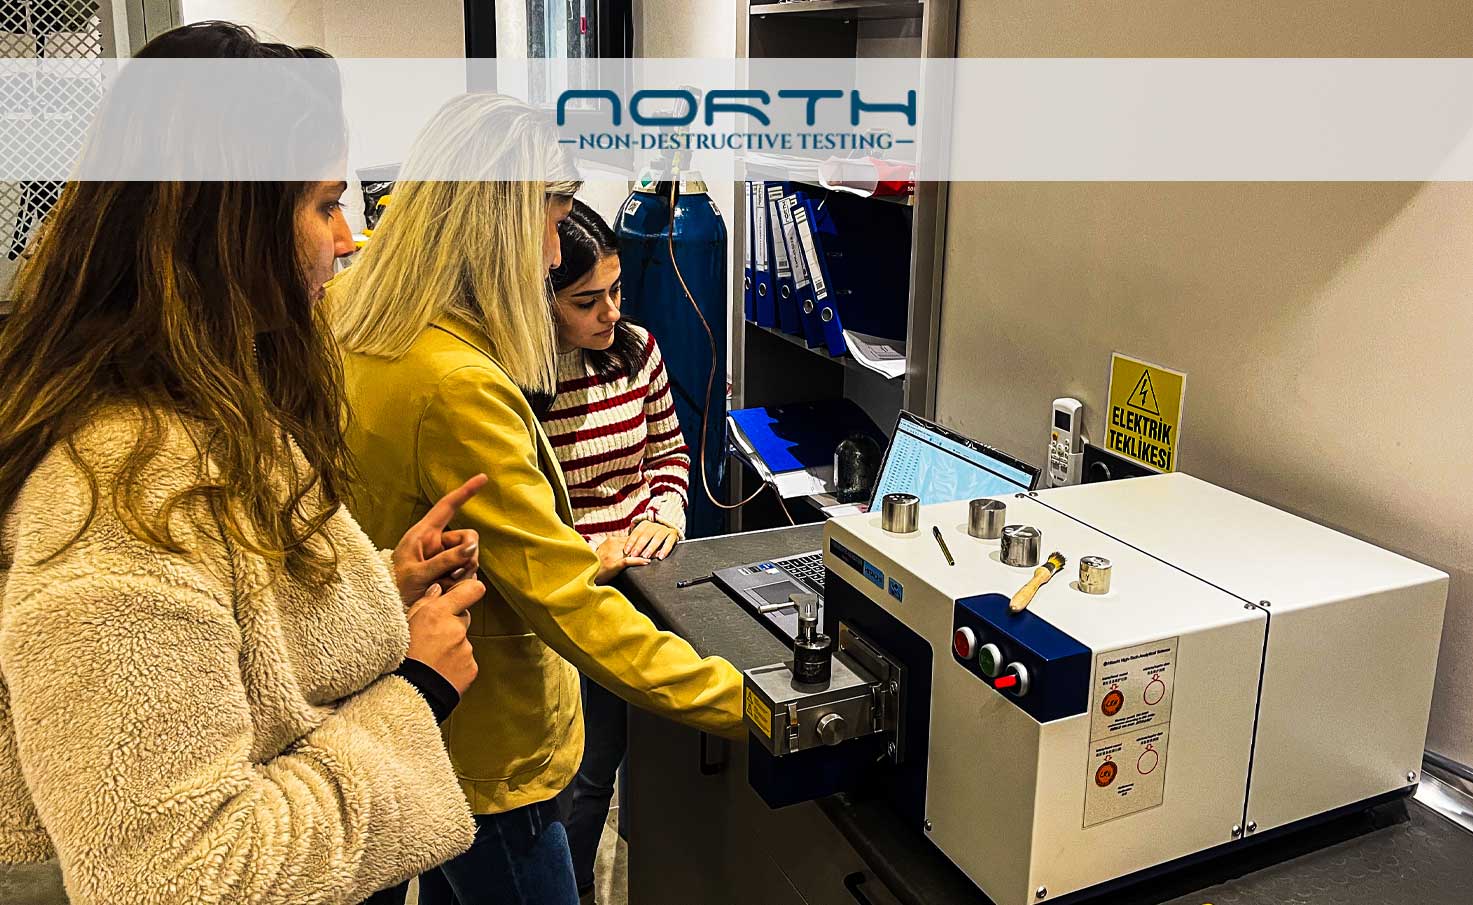 North Kalite, Laboratuvarında Hitachi Foundry Master Smart Spektrometresiyle Kimyasal Analizleri Yapmaya Başladı!